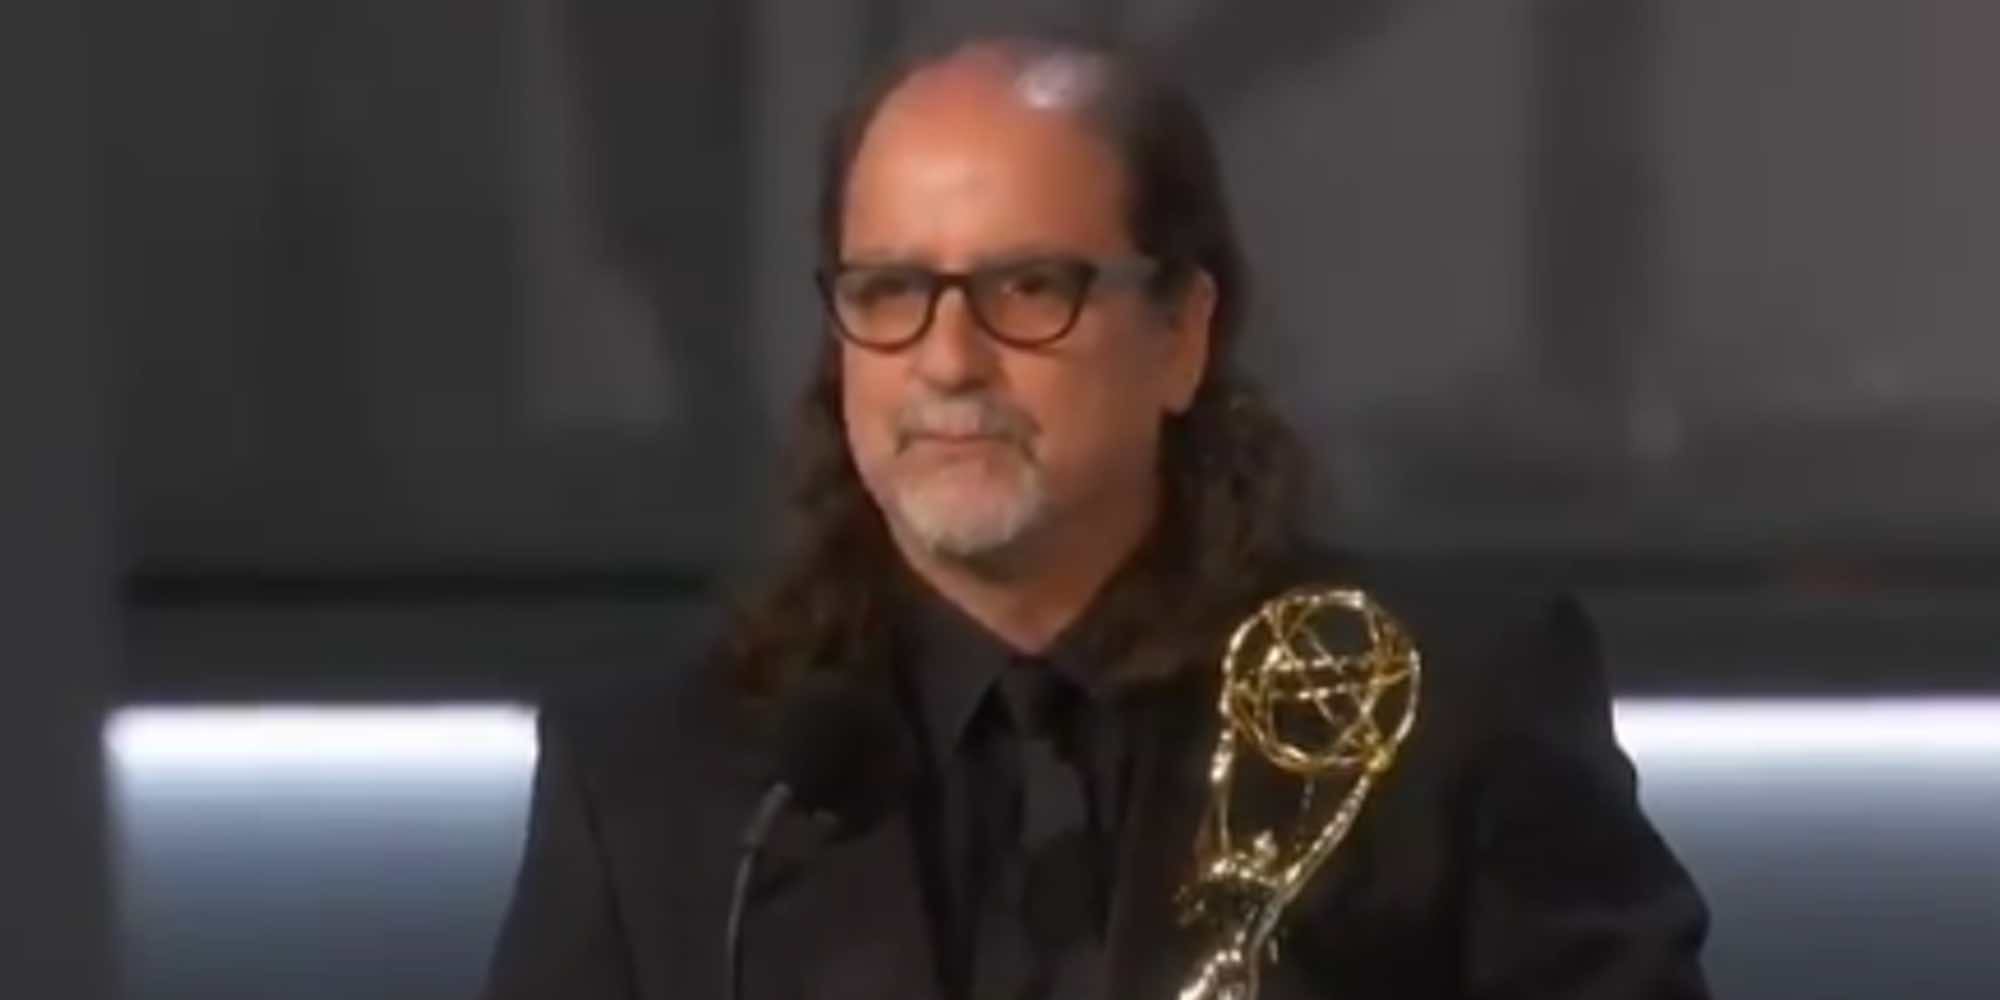 La pedida de mano de Glenn Weiss a su chica que ha eclipsado la entrega de los Emmys 2018